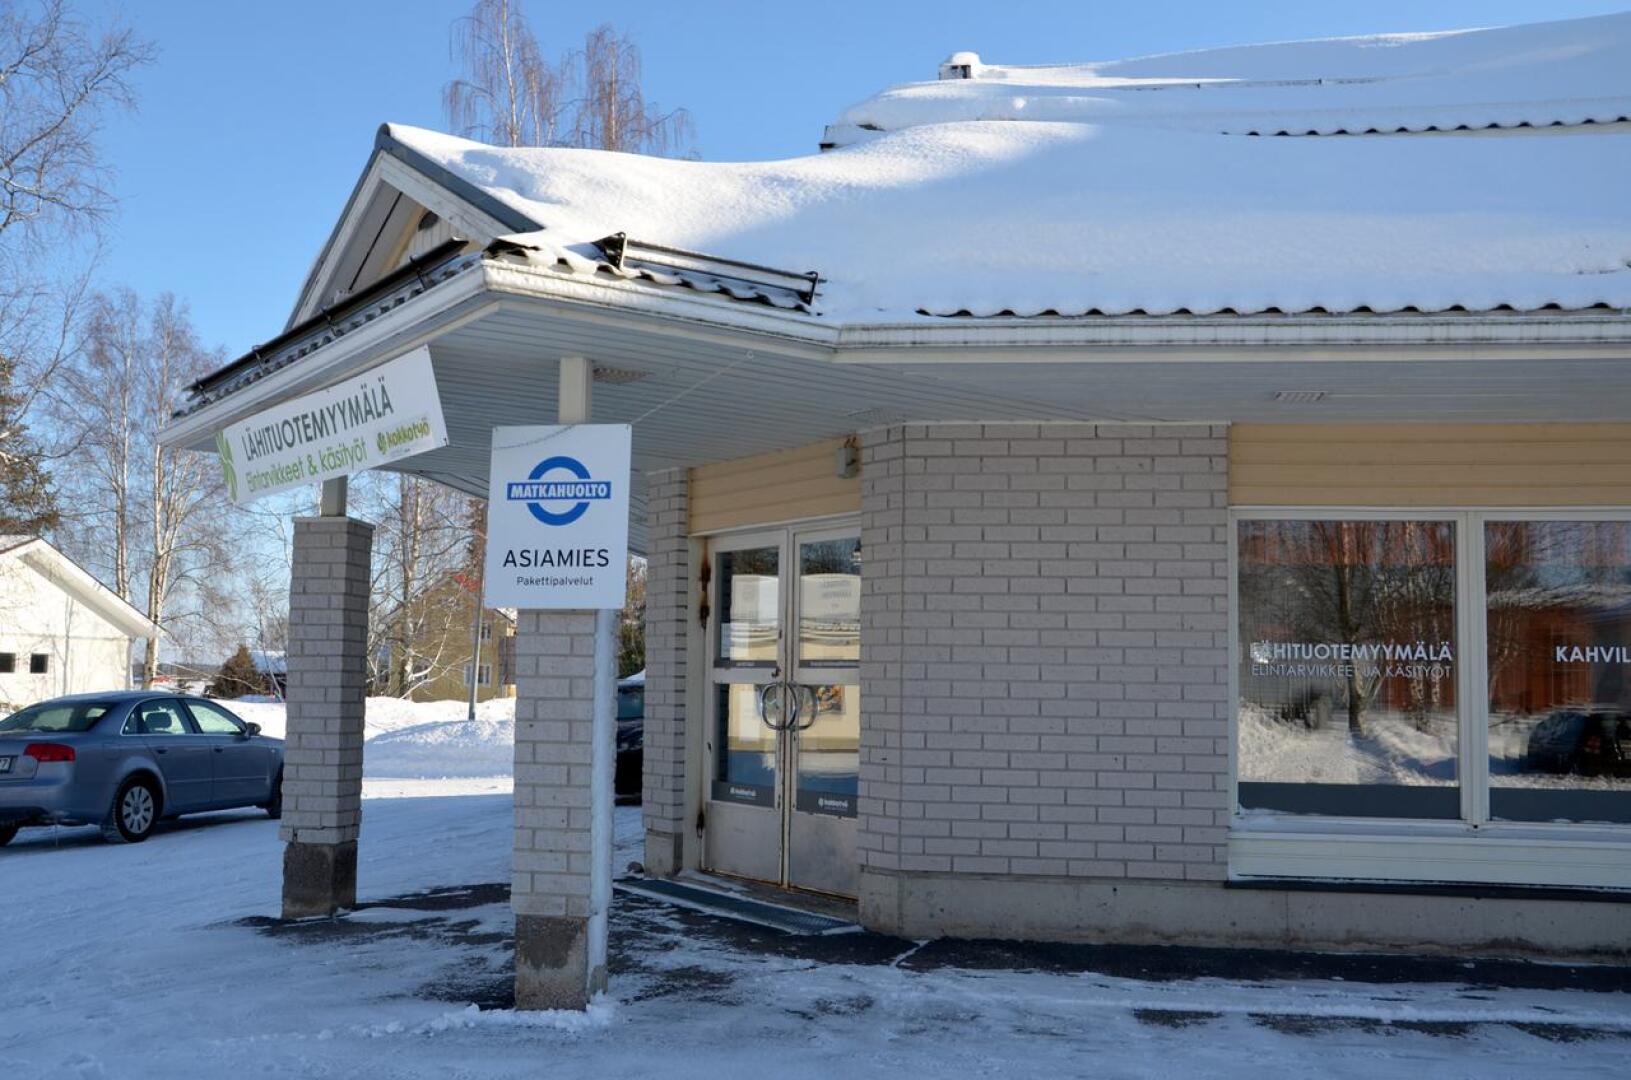 Toholammin Lähituotemyymälä avaa ovensa uudelleen. Toiminta siirtyi Kokkotyö-säätiön konkurssin jälkeen Toholammin kunnalle, joka jatkaa sitä osana työpajatoimintaa.